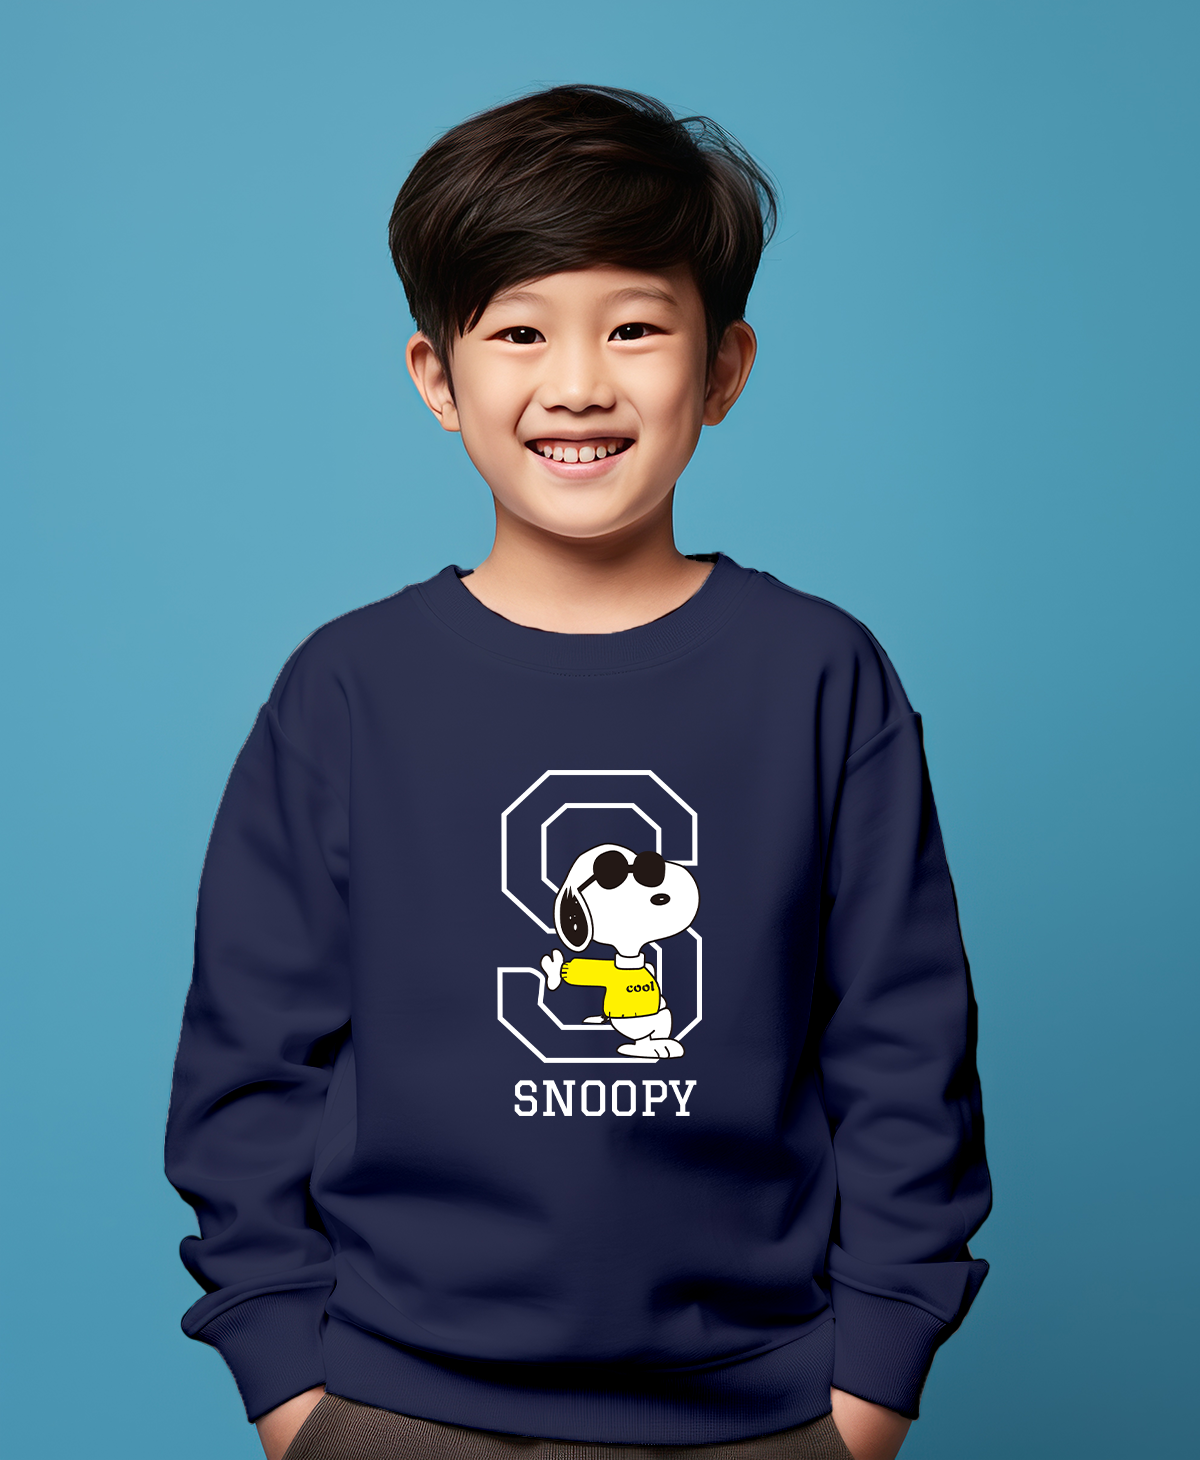 Snoopy dark blue sweatshirt for boys & girls